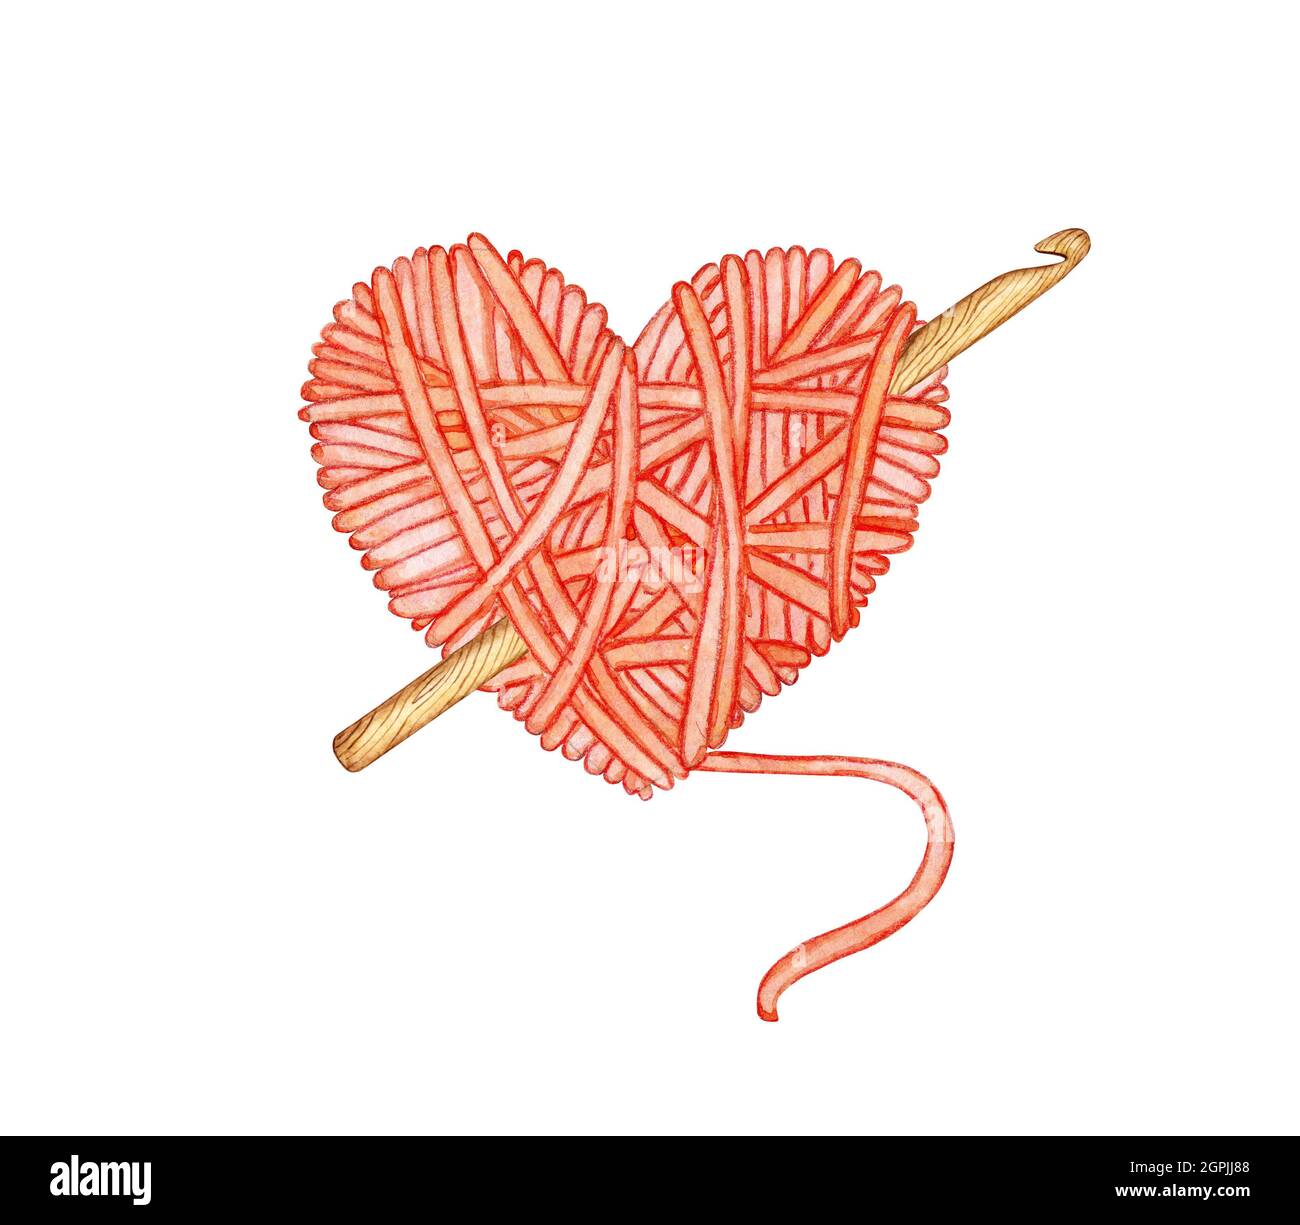 Illustrazione di acquerello di una sfera rossa di lana nella forma di un cuore con un uncinetto in esso. Amore per la maglieria, creatività, artigianato, logo, banner, d Foto Stock